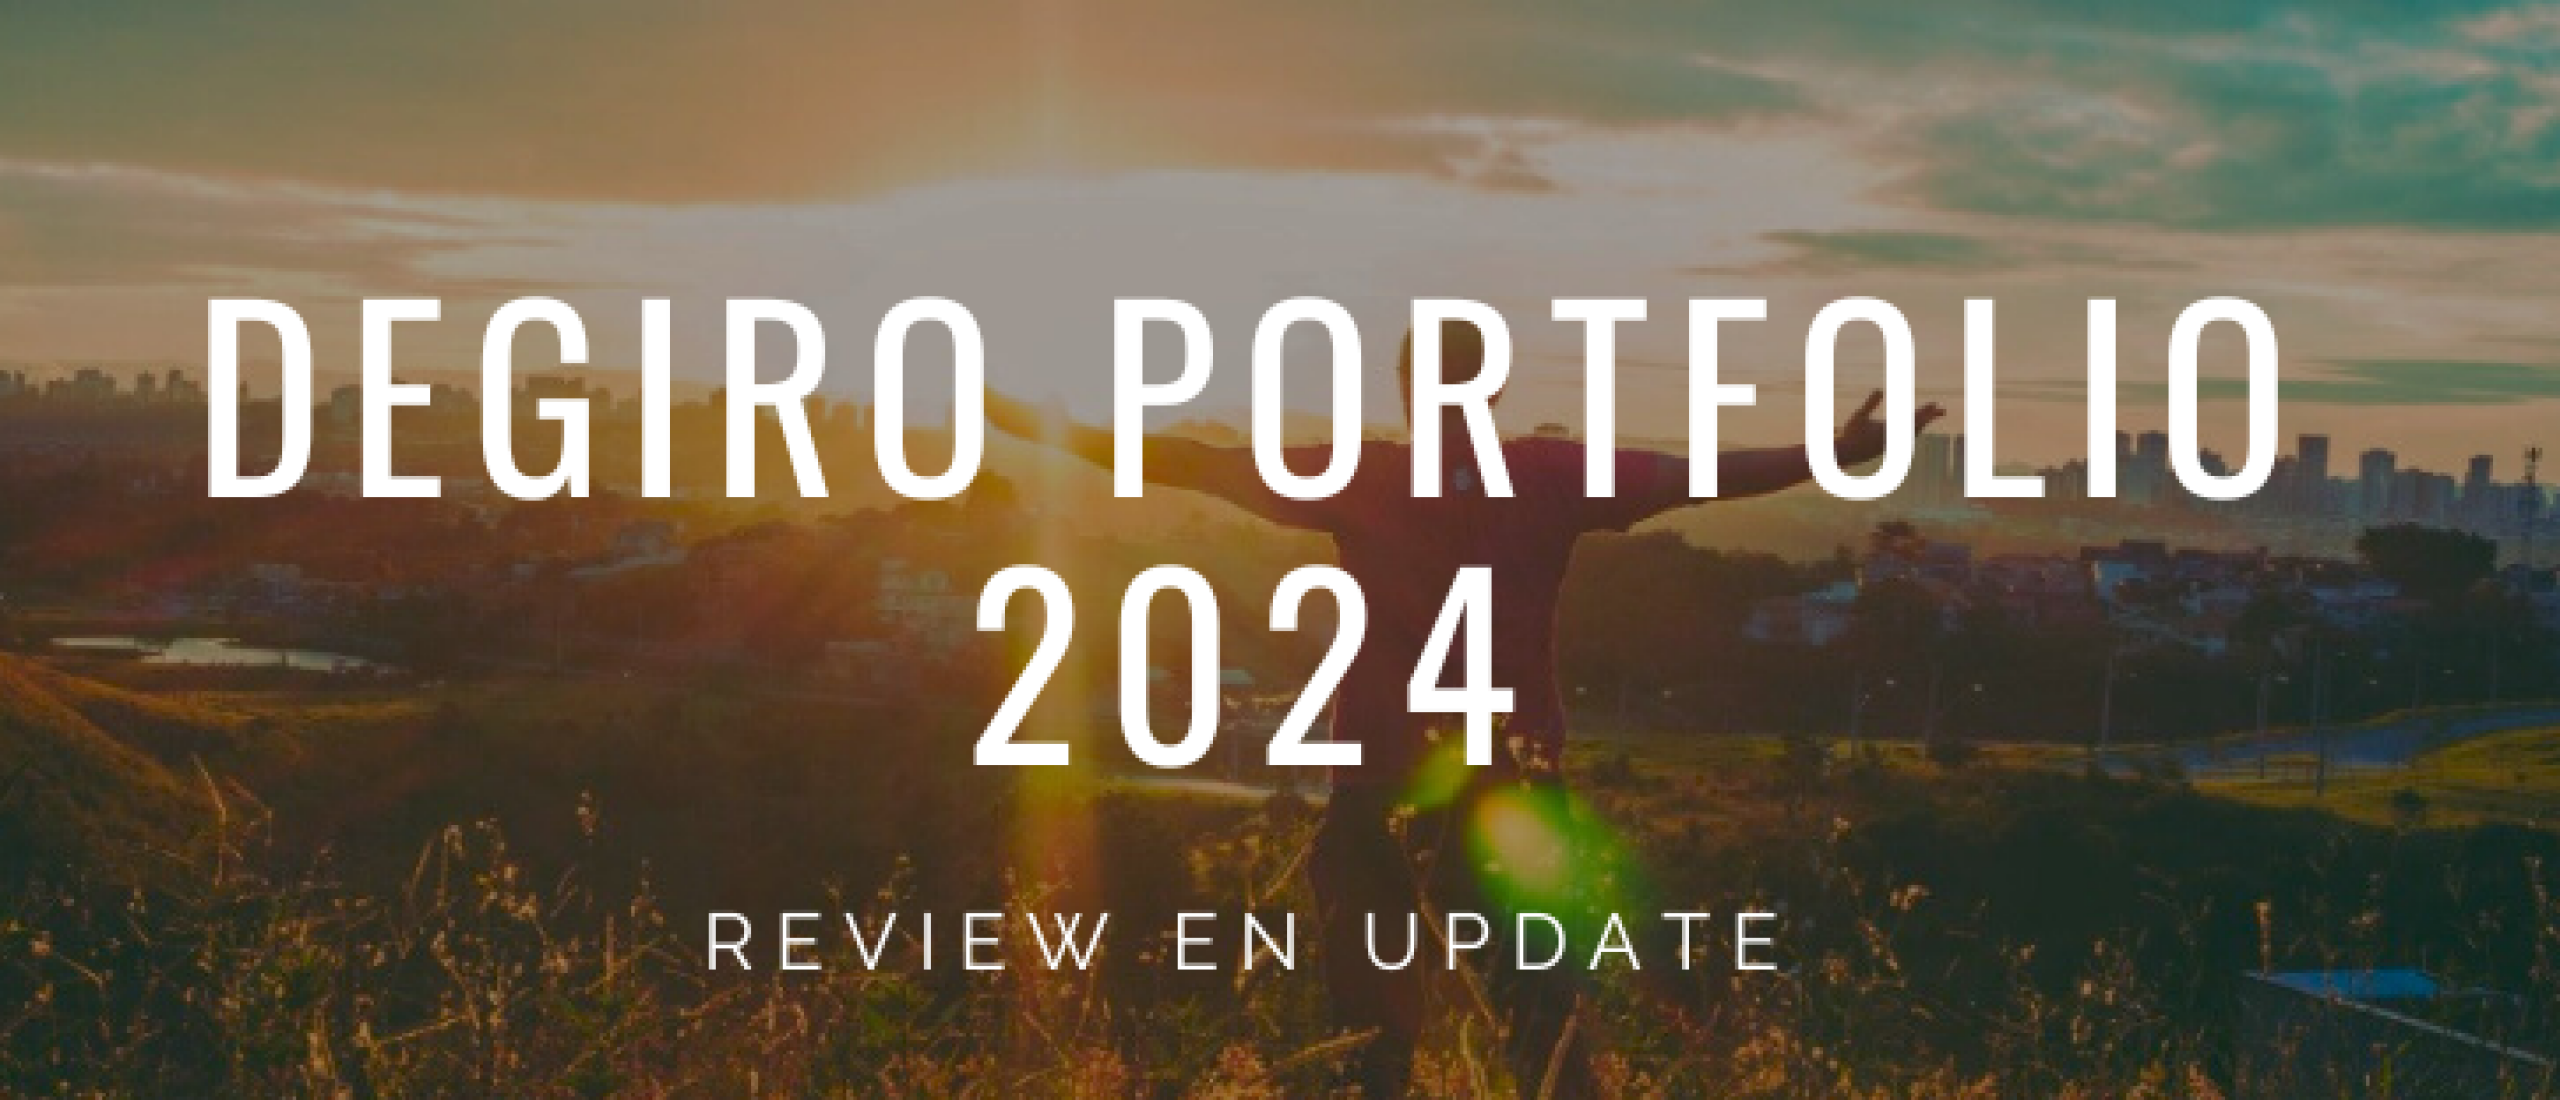 DEGIRO Portfolio 2024: Welke Aandelen Kopen voor DEGIRO Portfolio